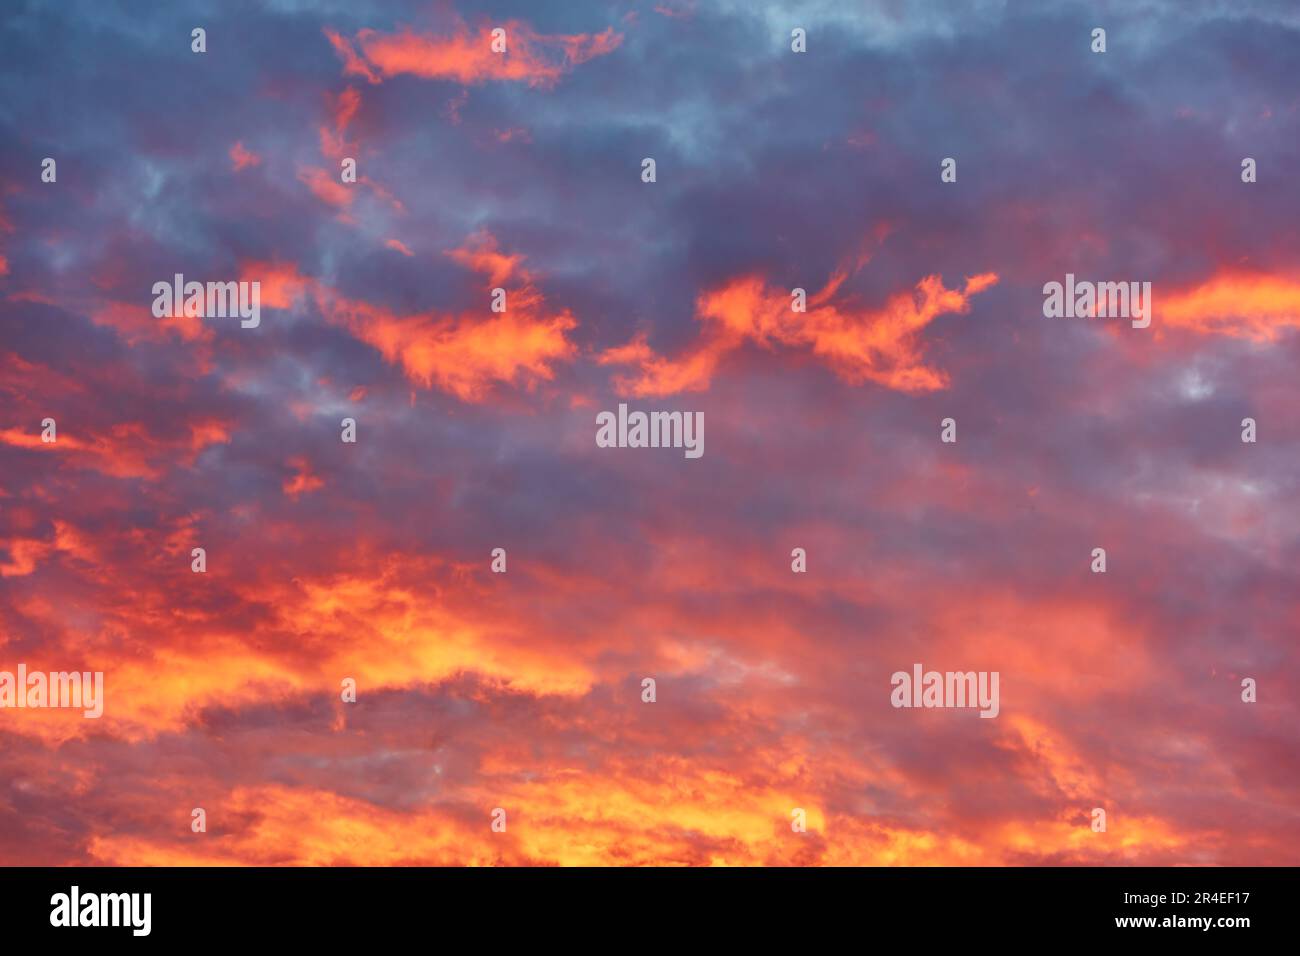 Wunderschöner Himmel mit dramatischen rot-orangefarbenen Wolken bei Sonnenuntergang. Abstrakter Hintergrund mit Kopierbereich Stockfoto